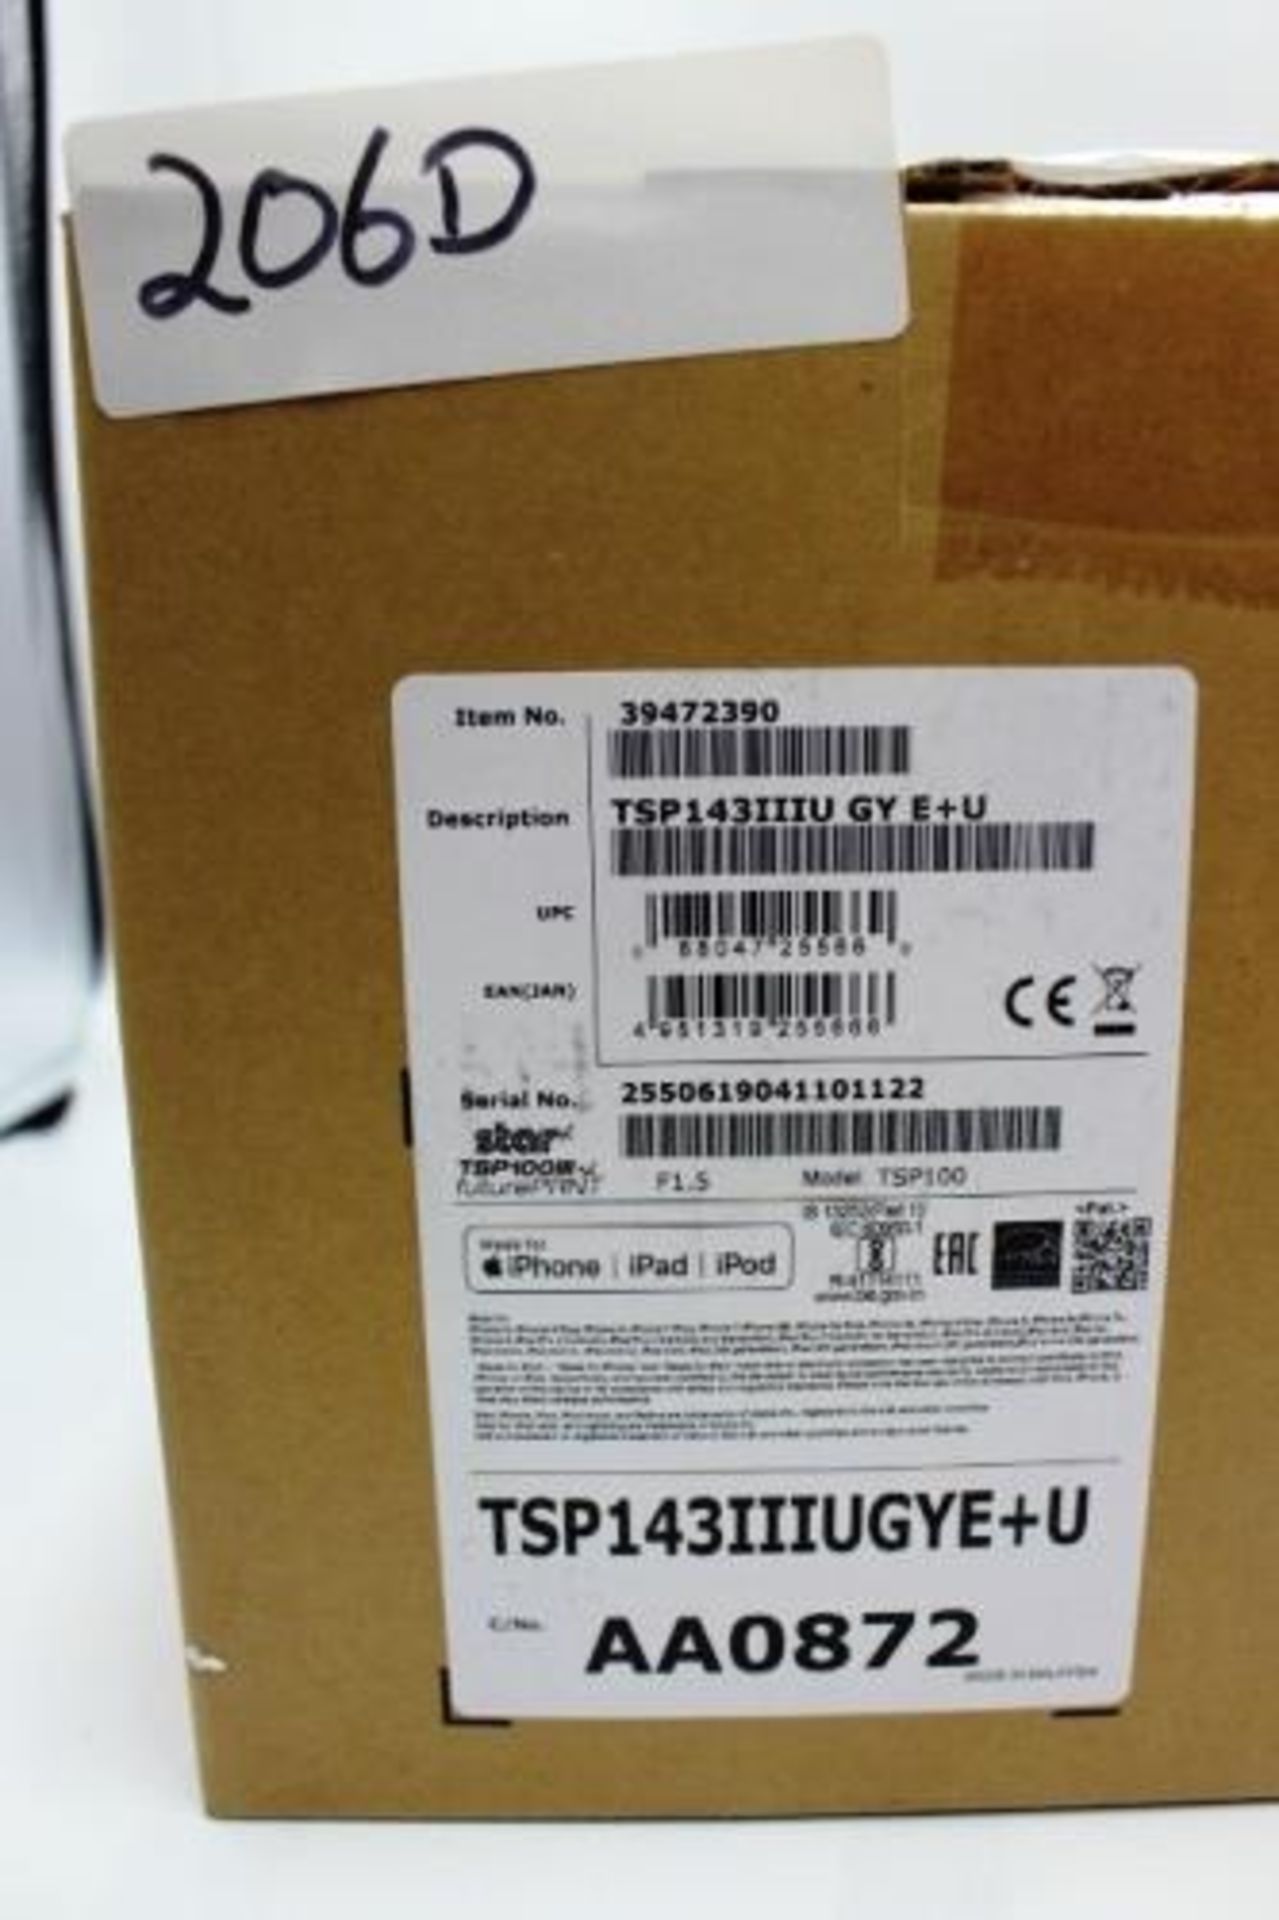 1 x Star TSP100III Future Print, model TSP143IIIUGYE+U - Sealed new in box (cab 14) - Image 2 of 2